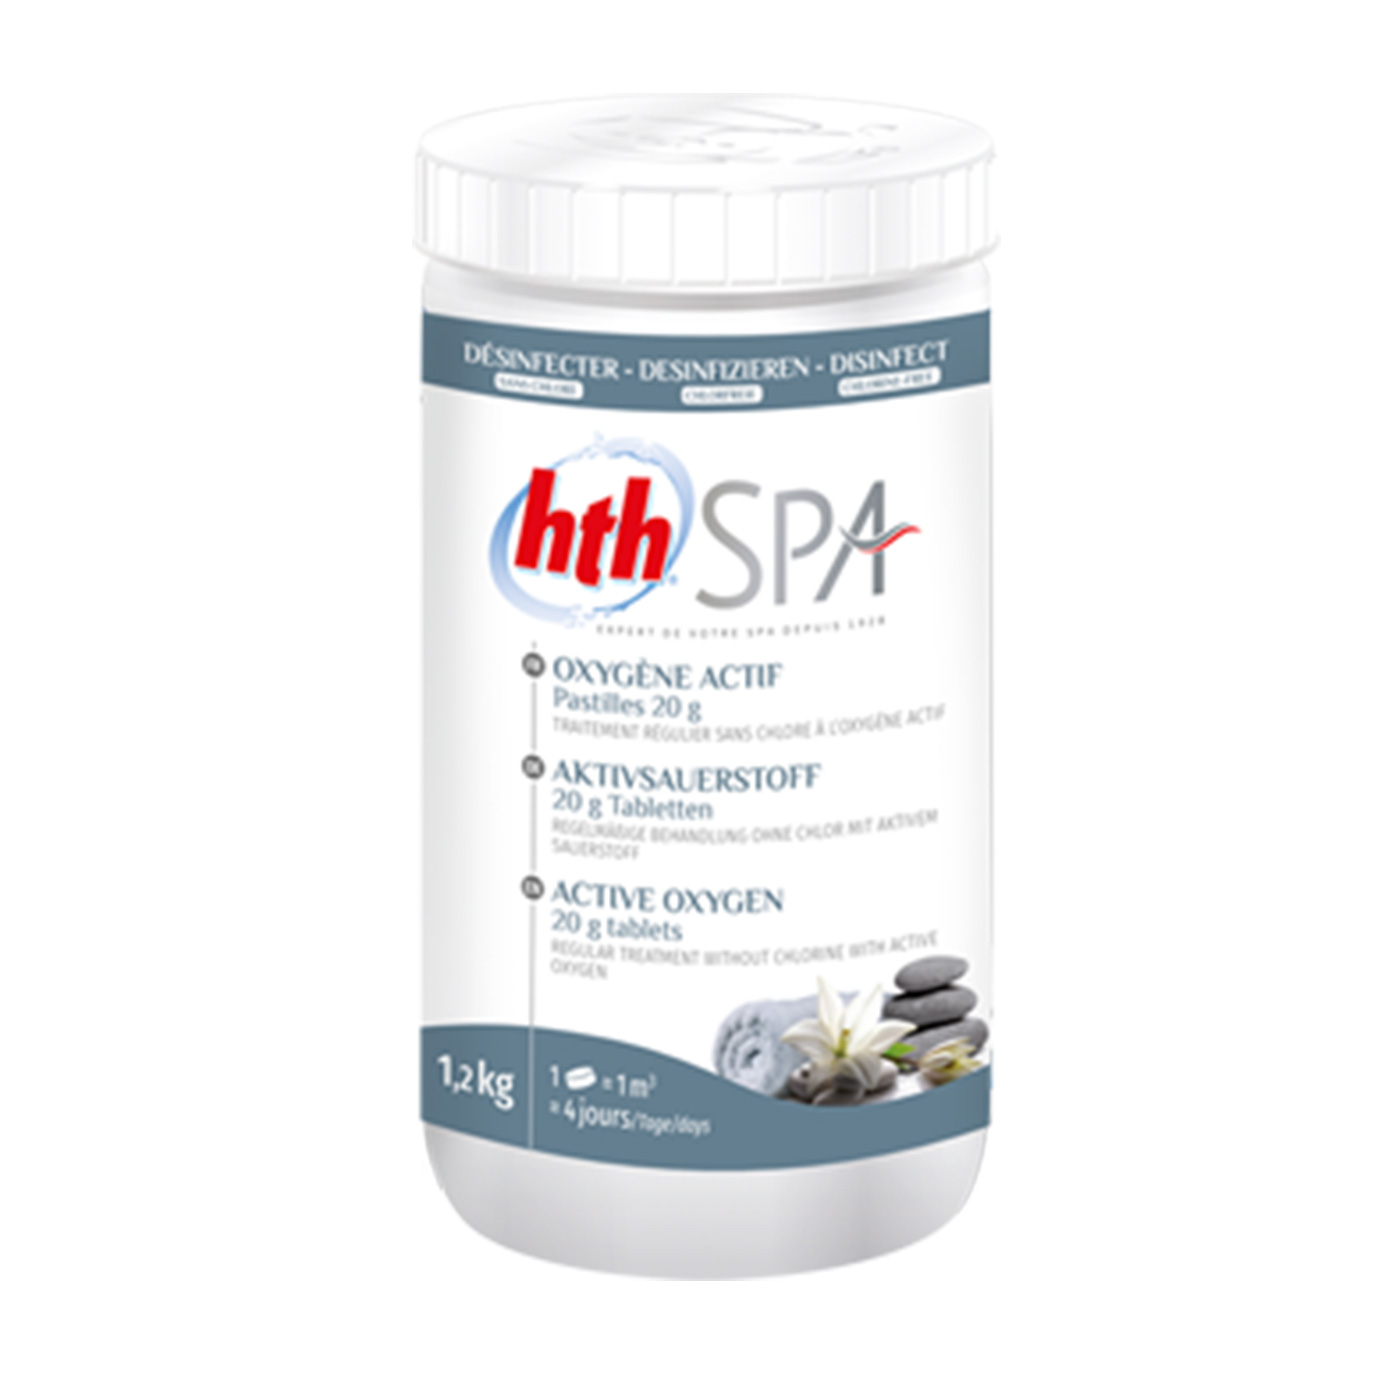 HTH pastille 20g d'oxygene actif - 1,2kg